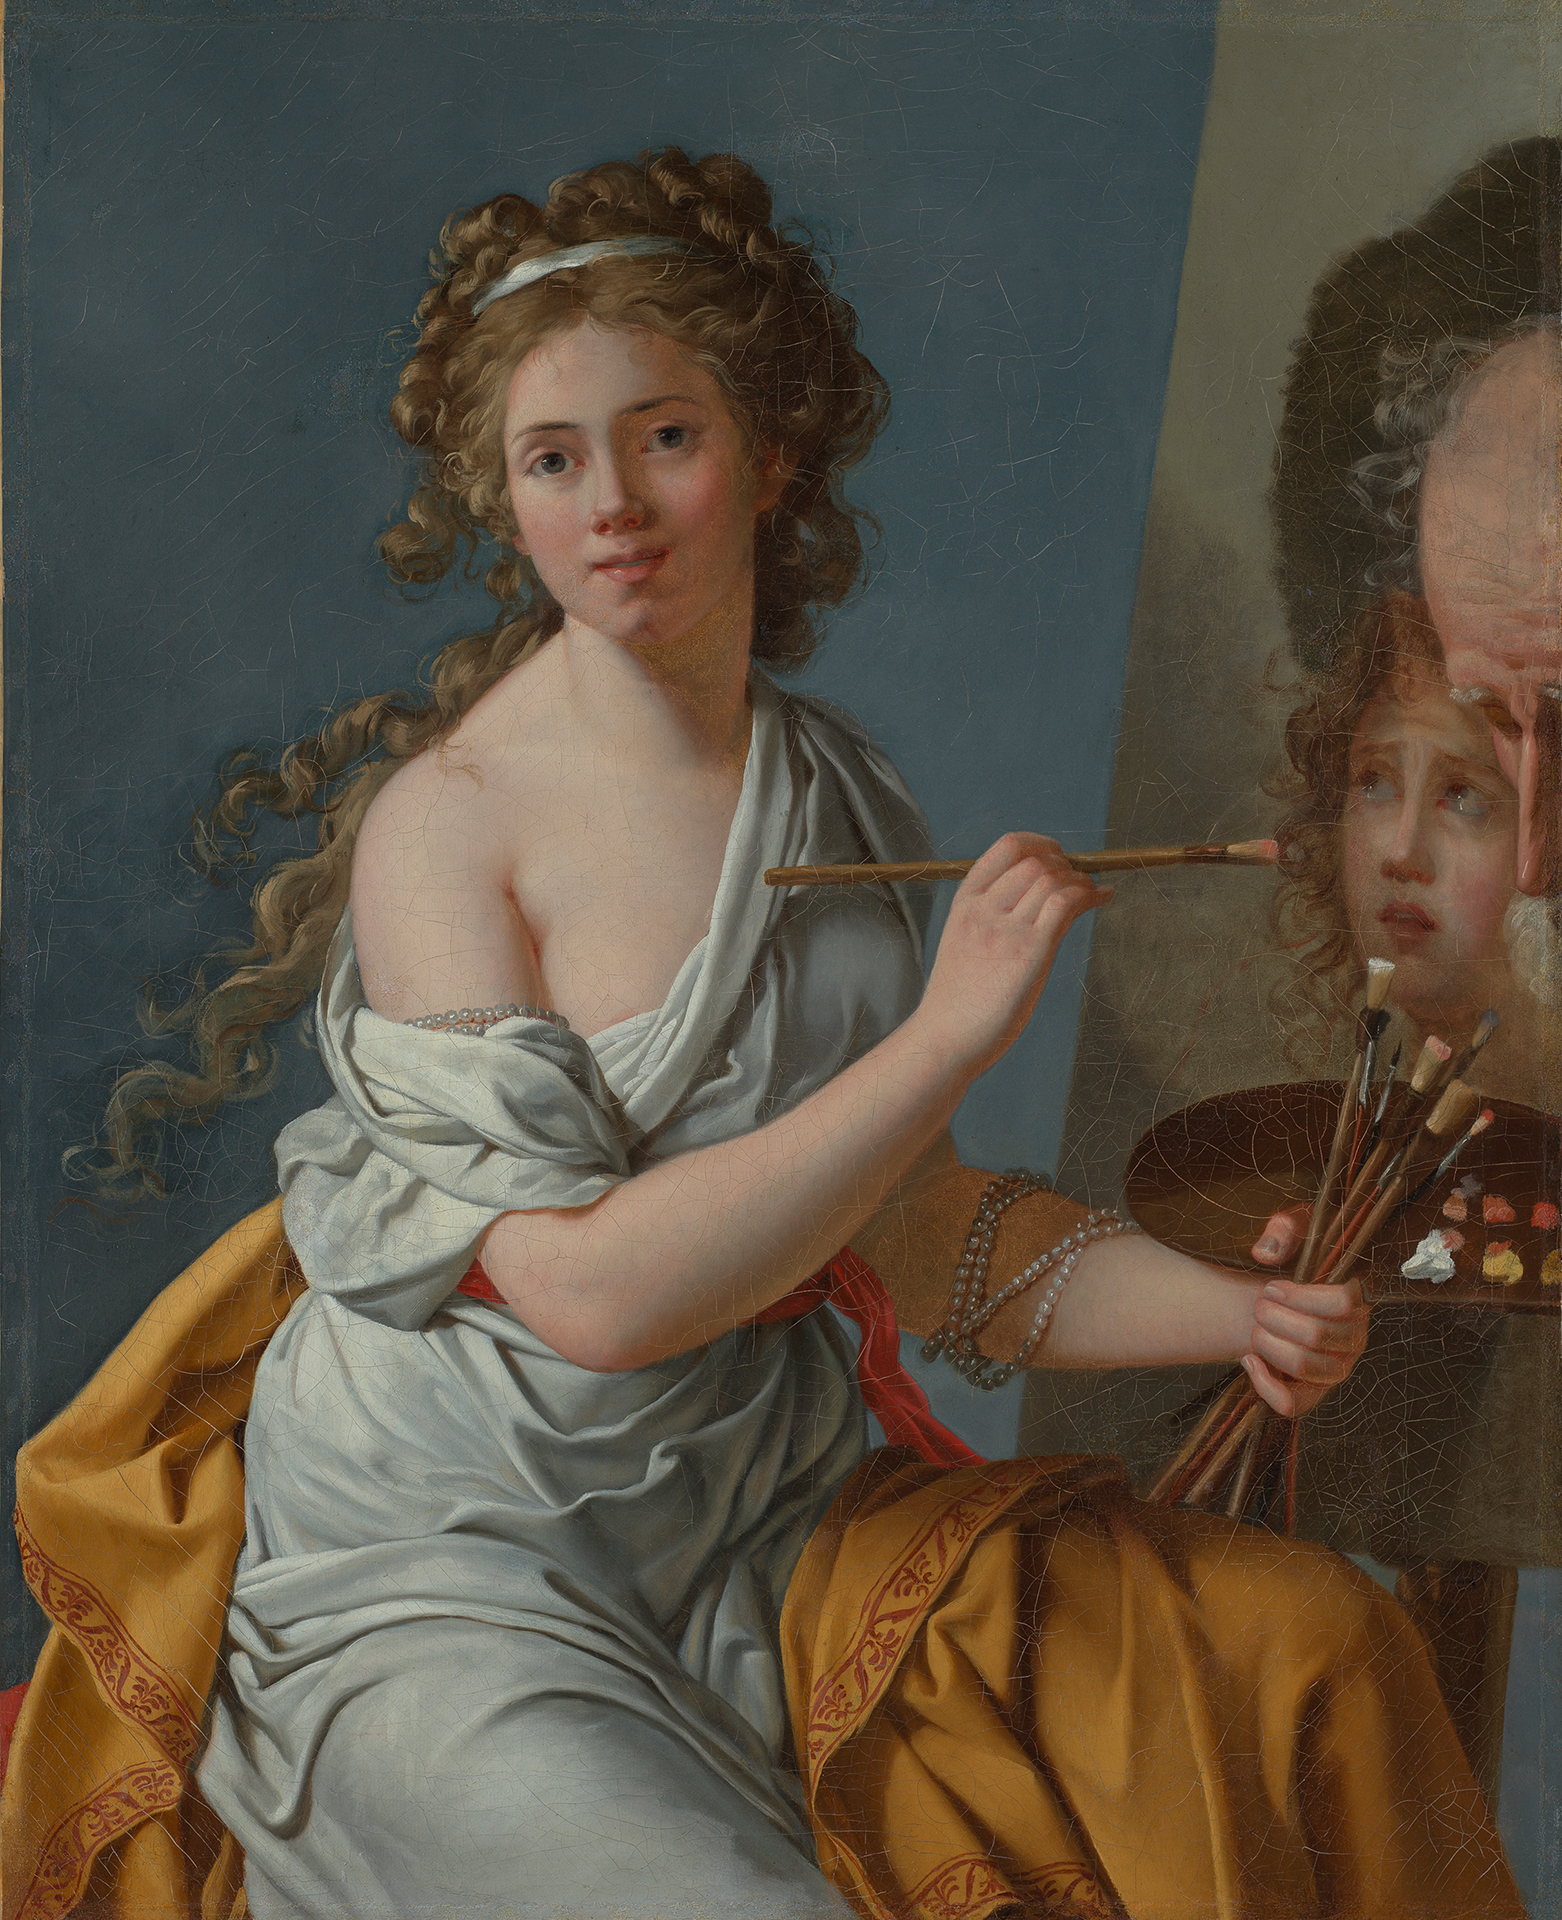 Ein Selbstbildnis der Malerin Marie Guilhelmine Benoist während sie im Akt des Malens ist und die Betrachter*innen anblickt